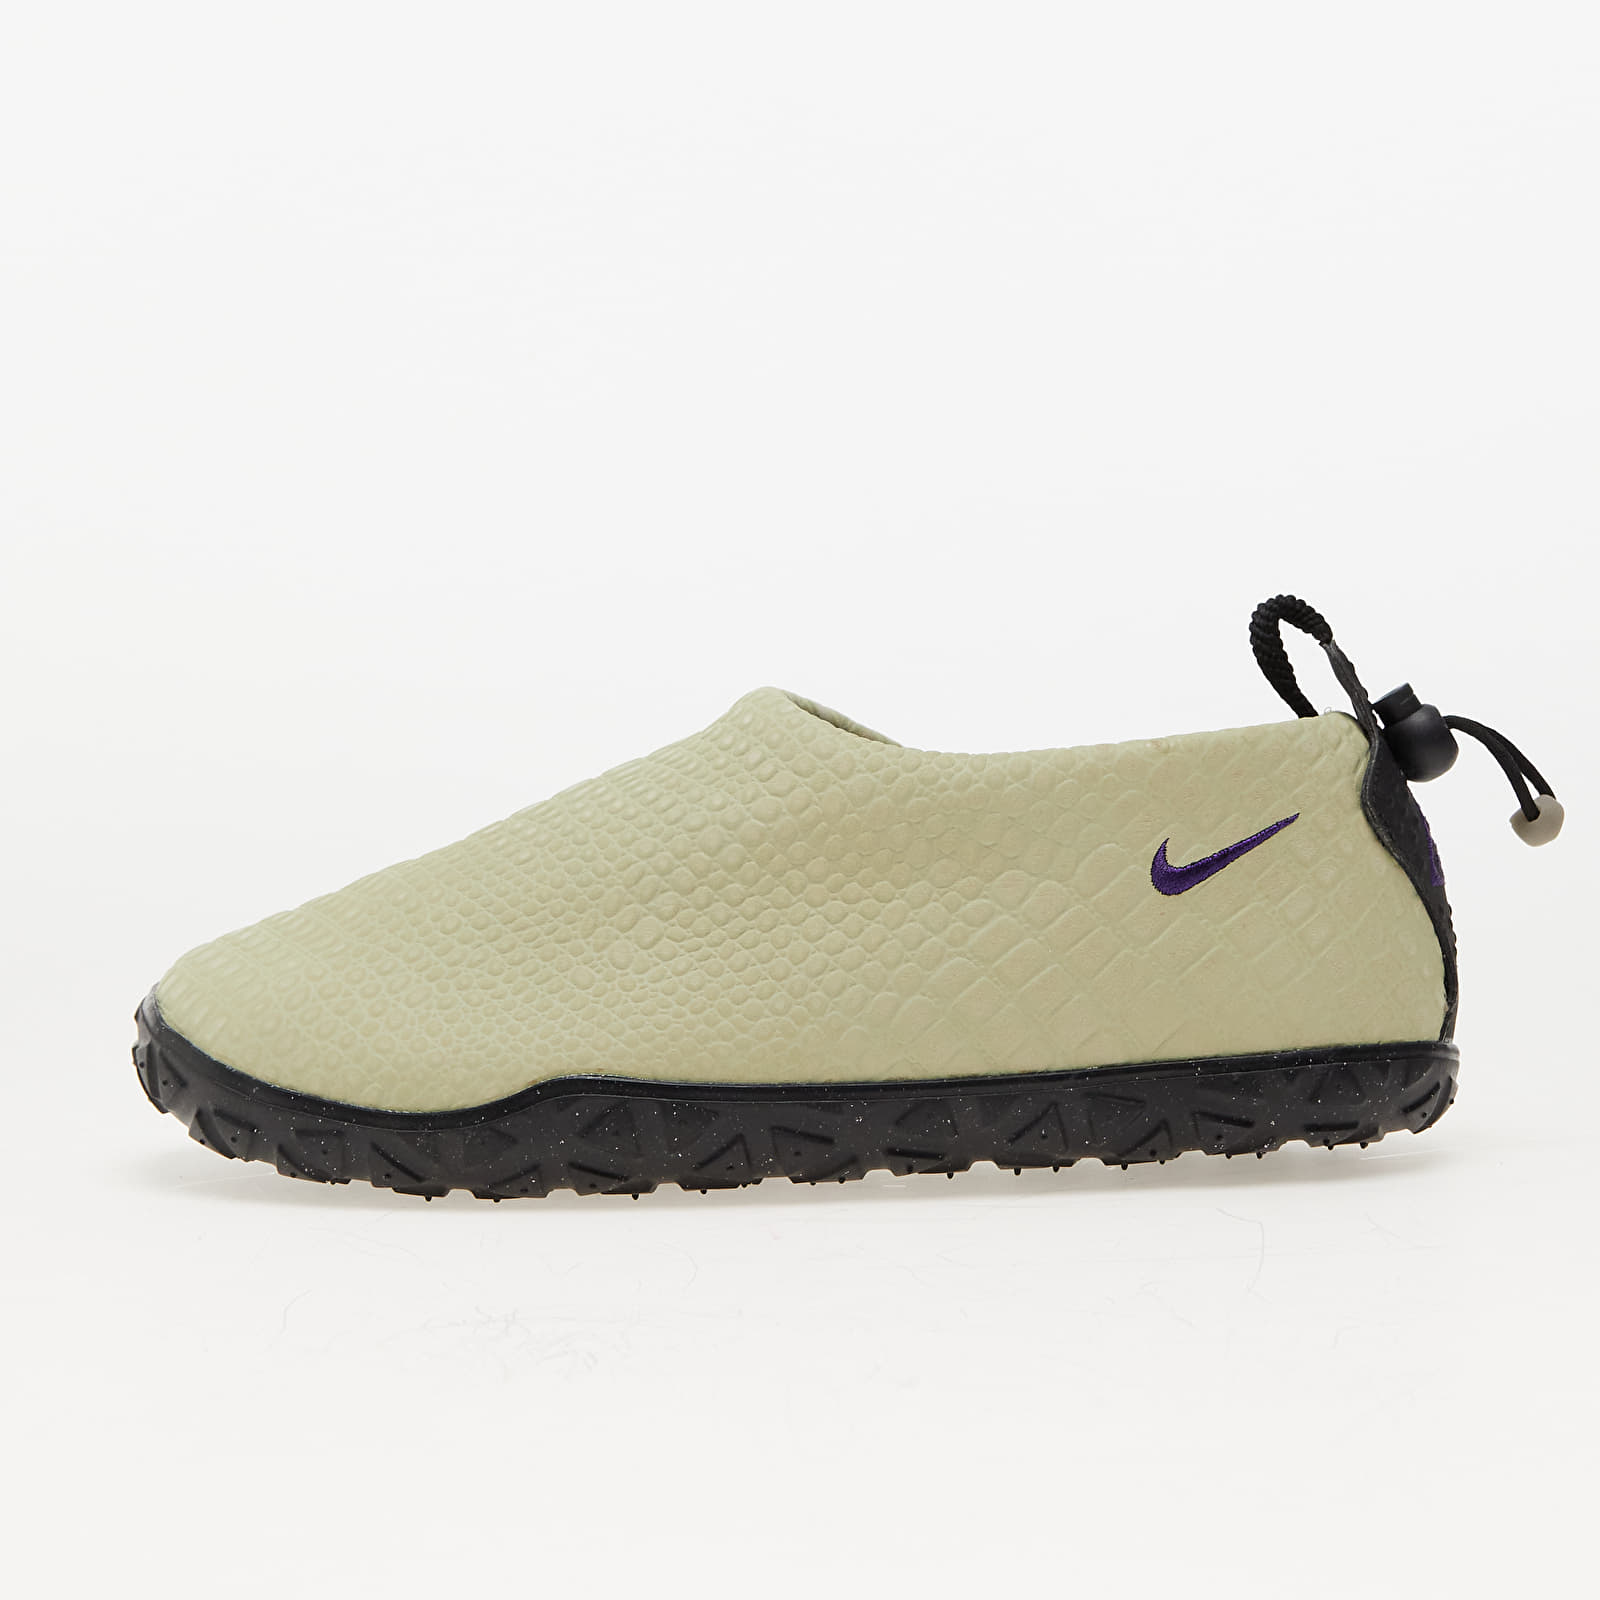 Chaussures et baskets homme Nike ACG Moc Premium Olive Aura/ Field Purple-Olive Aura-Black